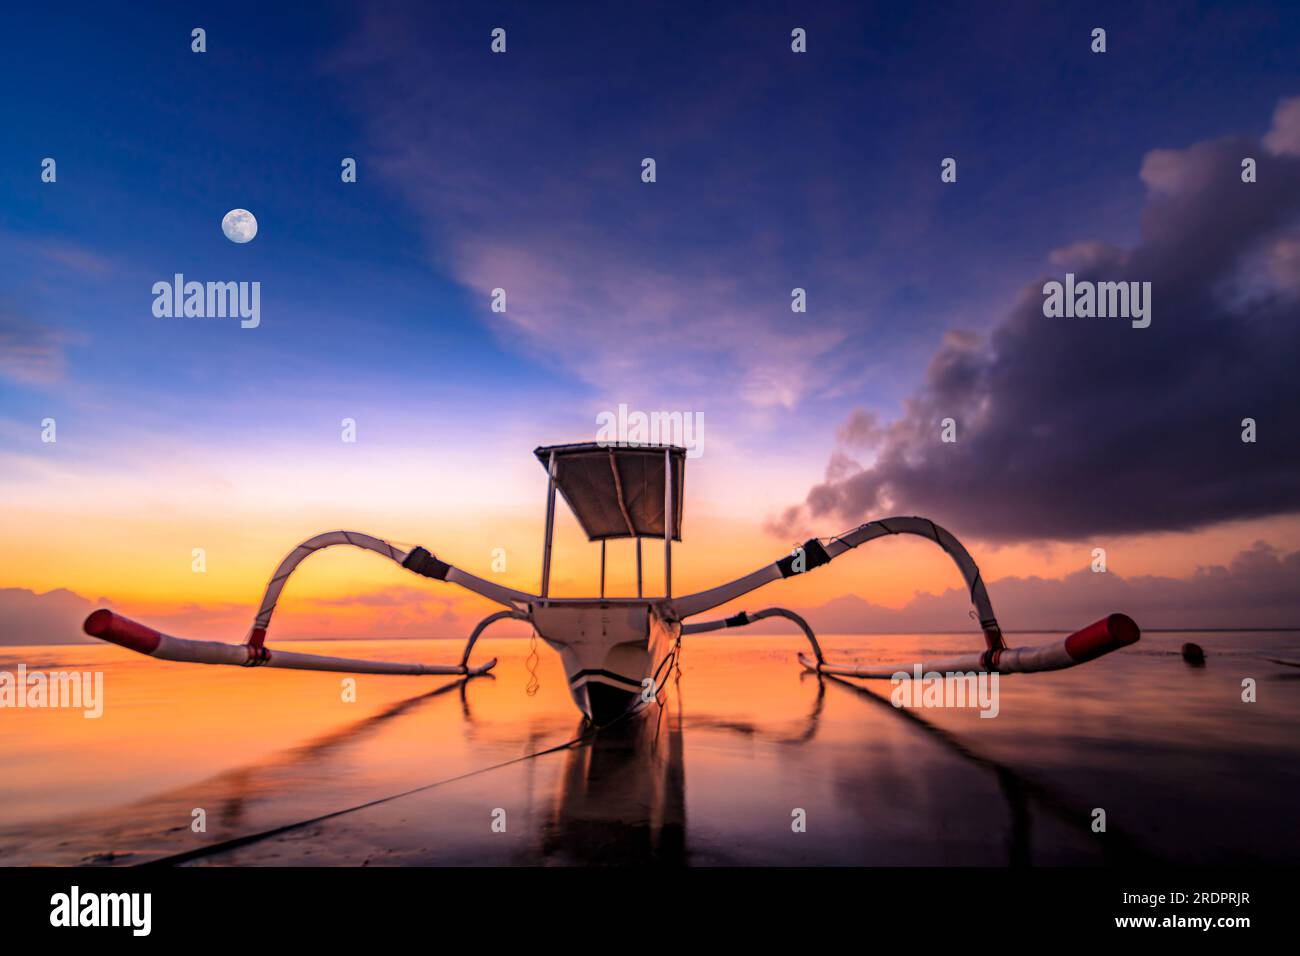 Bali Sanur, bateau de pêche traditionnel au lever du soleil. Gros plan dans l'eau peu profonde et calme avec rétro-éclairage et grand ciel. jukung Banque D'Images